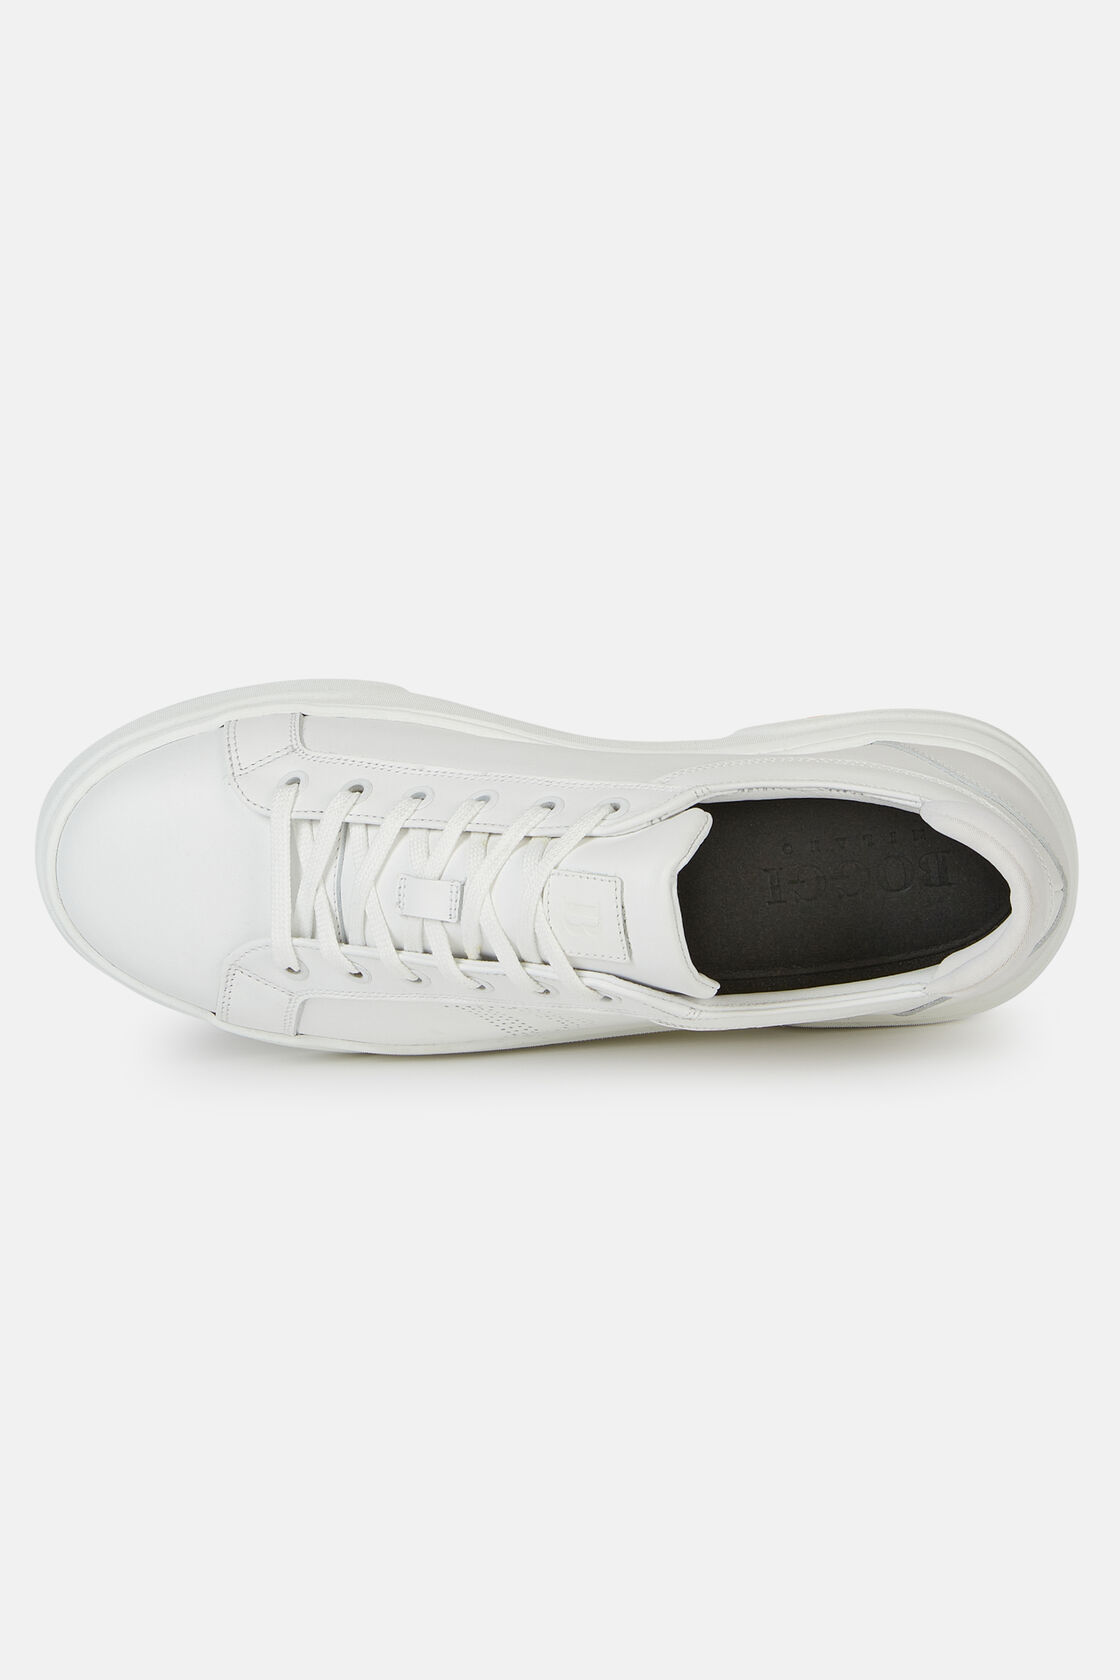 Weiße Sneaker Aus Leder Mit Logo, Weiß, hi-res